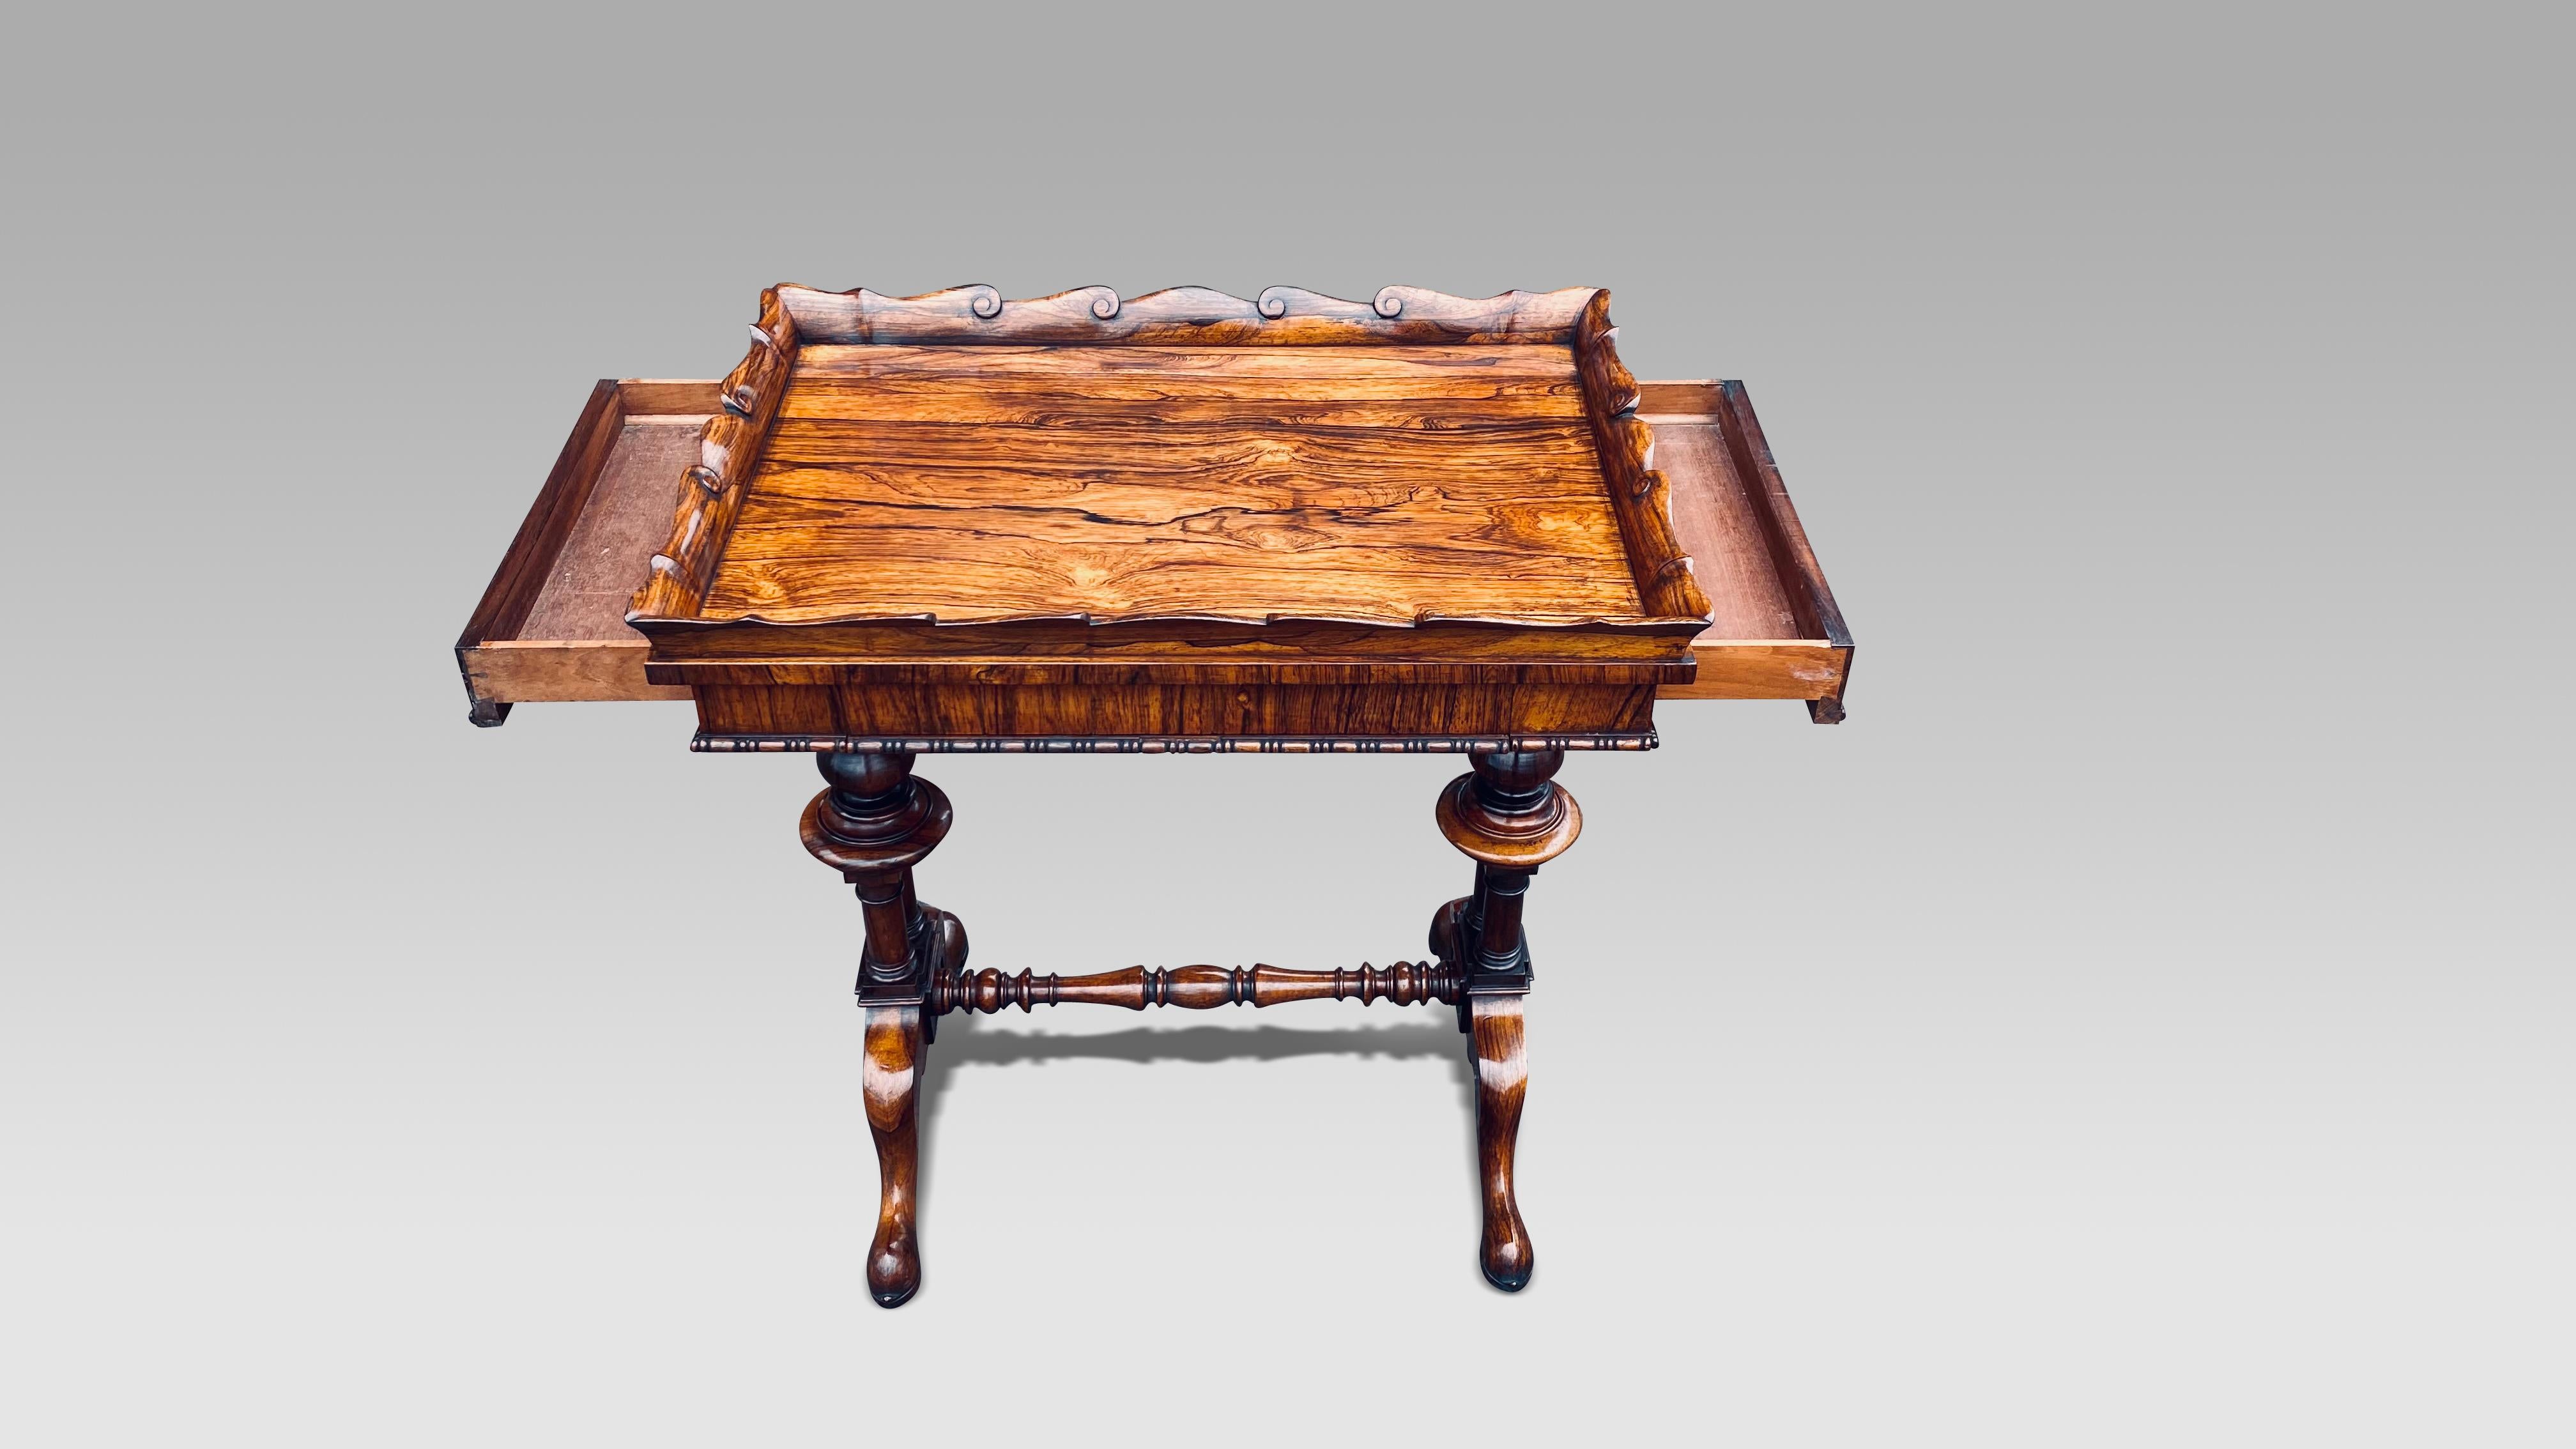 Table de travail en bois de rose du début du 19e siècle, attribuée avec certitude à Gillows.
La table est composée de placages de palissandre finement figurés et d'un plateau en palissandre massif sculpté de volutes.
La partie supérieure comporte